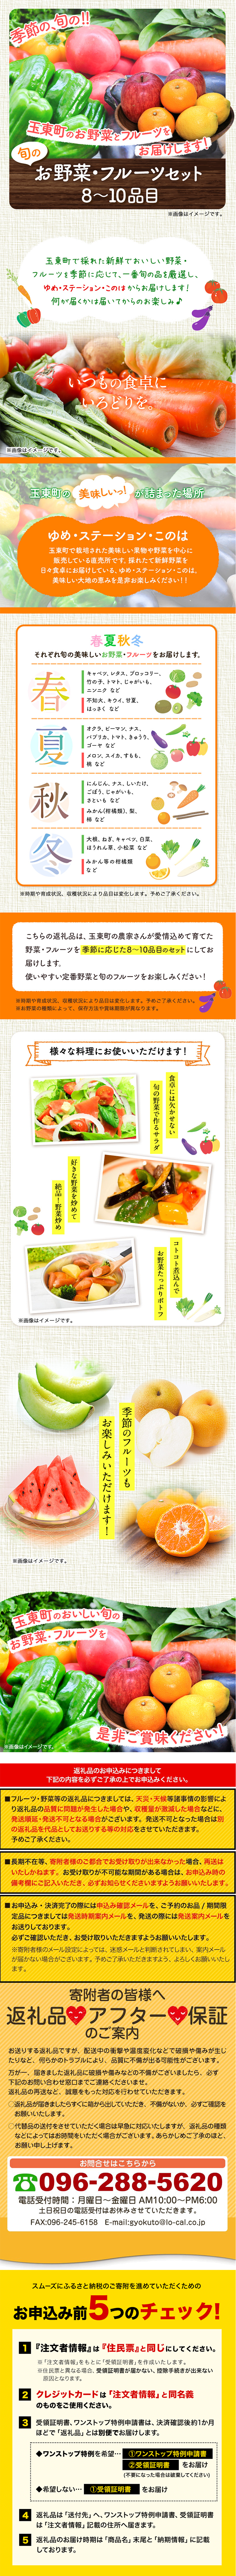 季節の野菜・フルーツ詰め合わせセット_pc_1